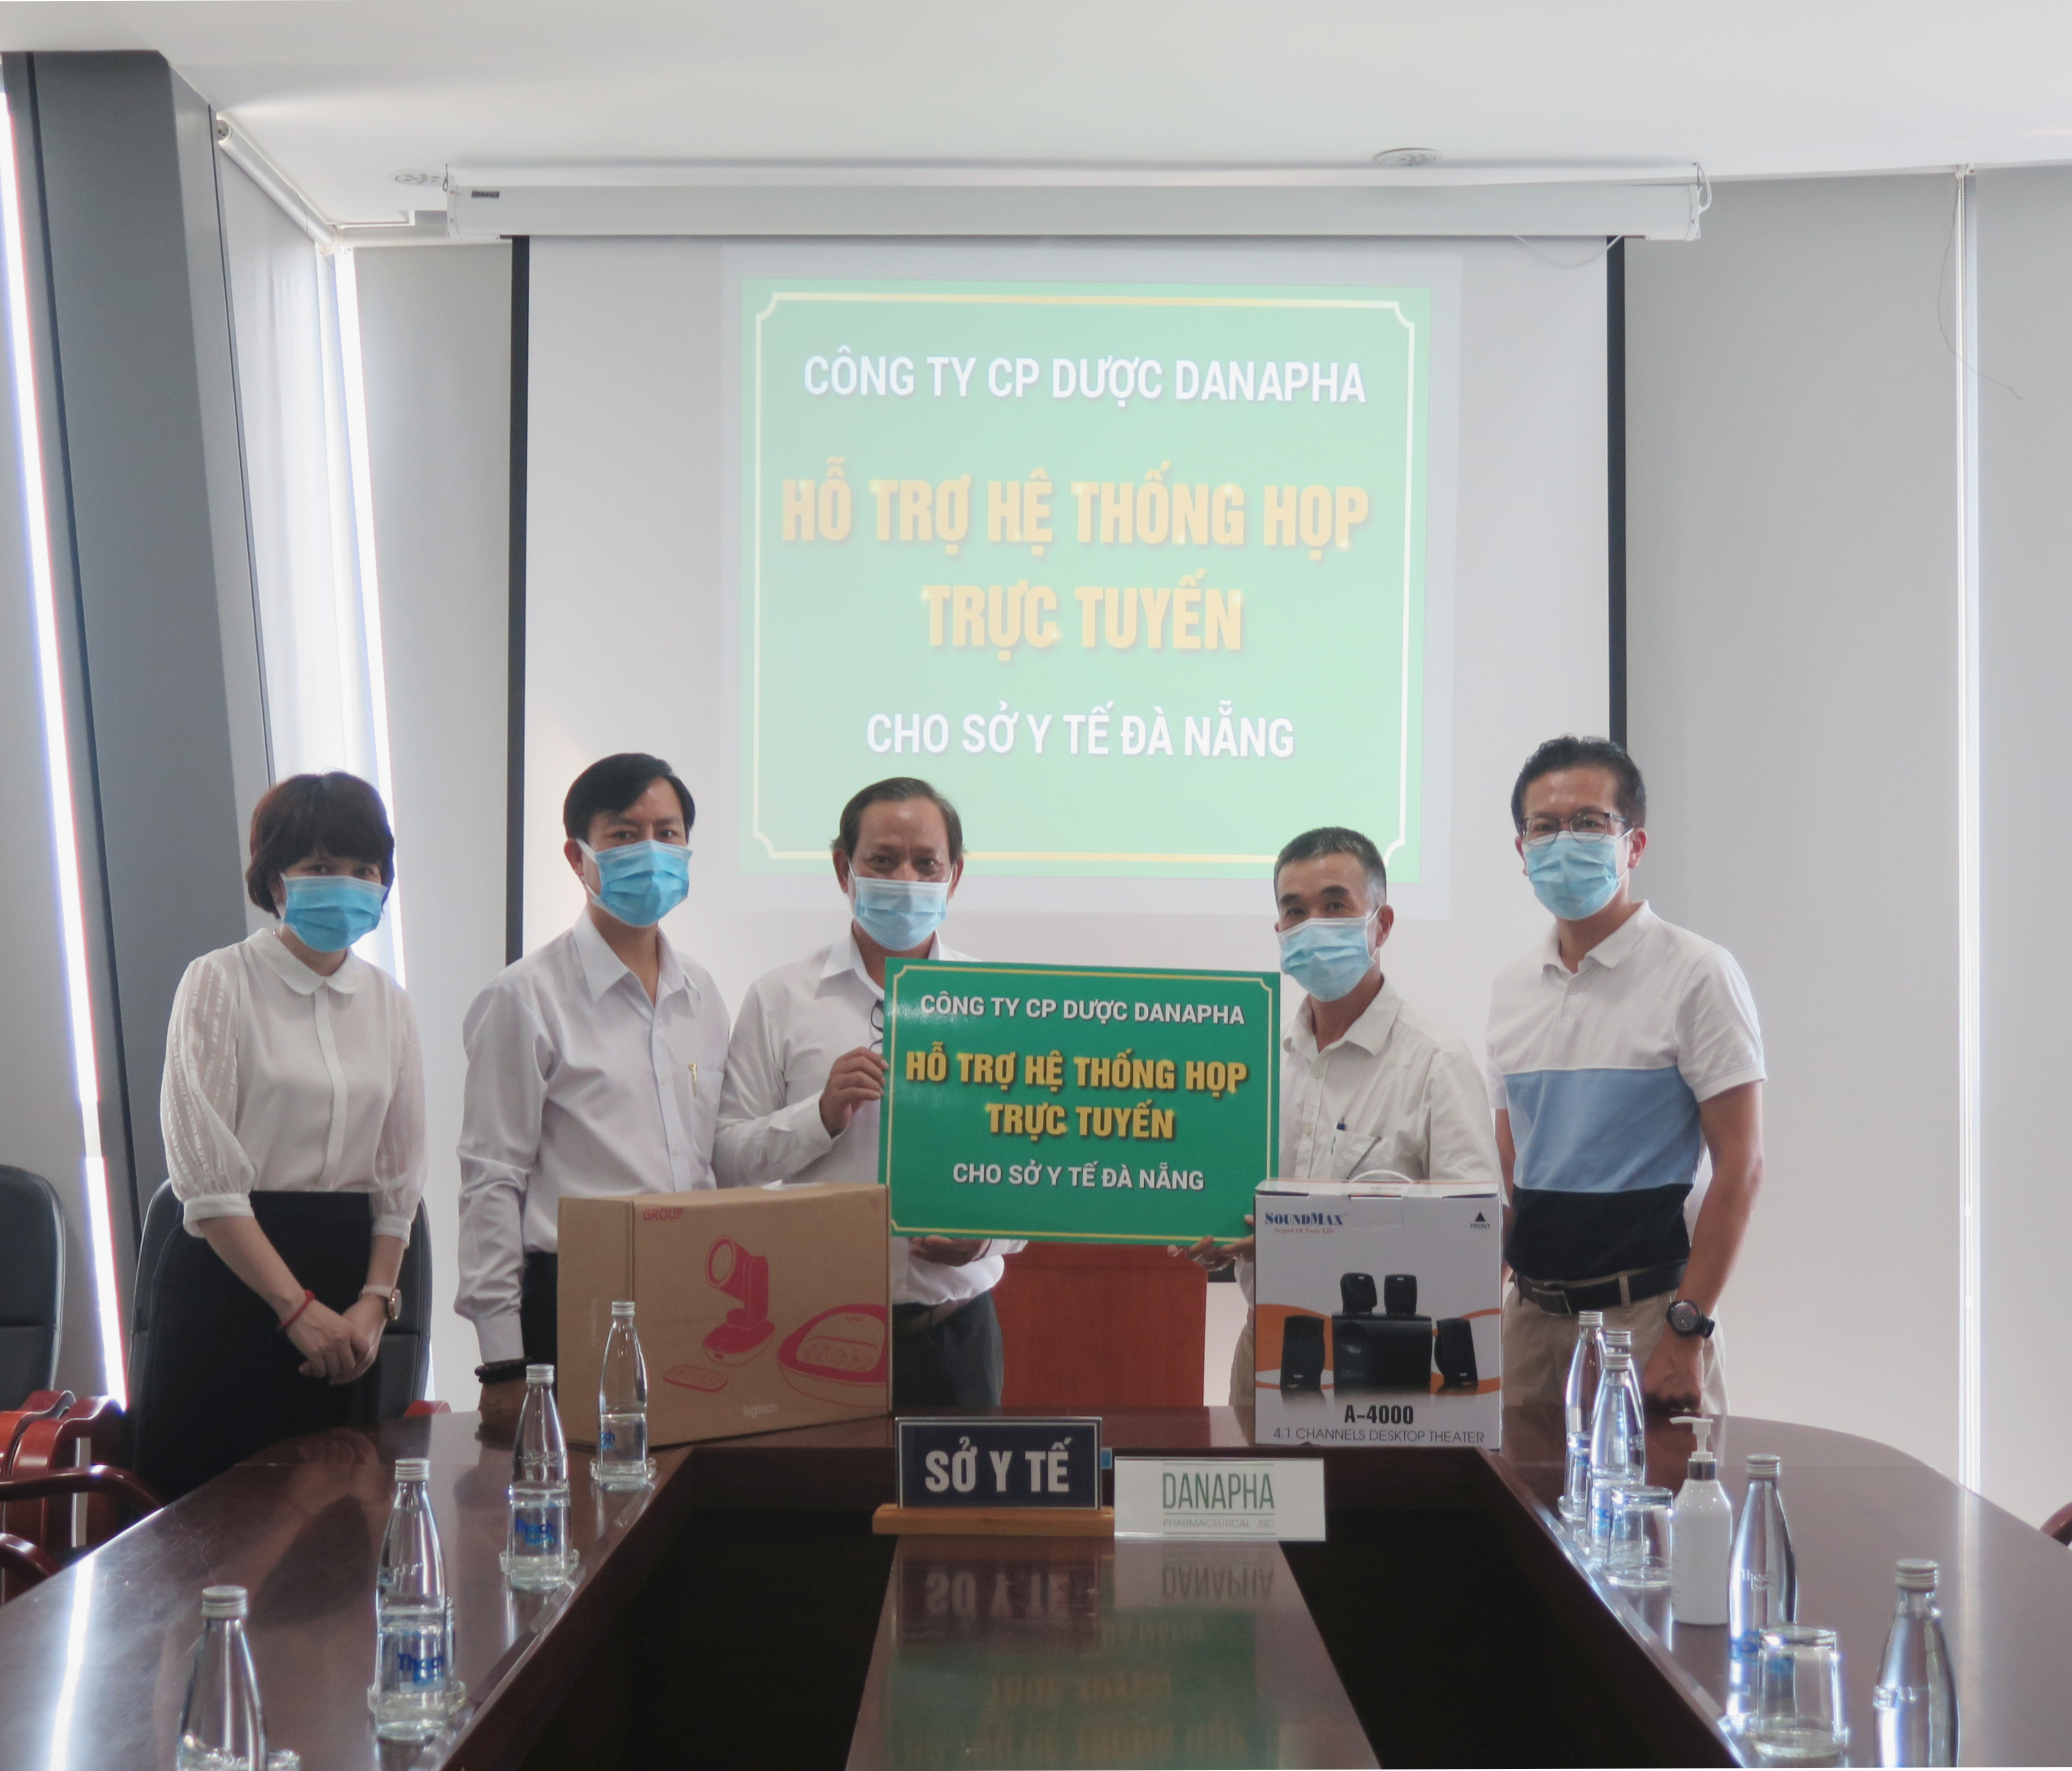 Chung tay chống dịch Covid-19, Công ty CP Dược Danapha trao tặng Bộ thiết bị họp trực tuyến cho Sở Y Tế Tp.Đà Nẵng